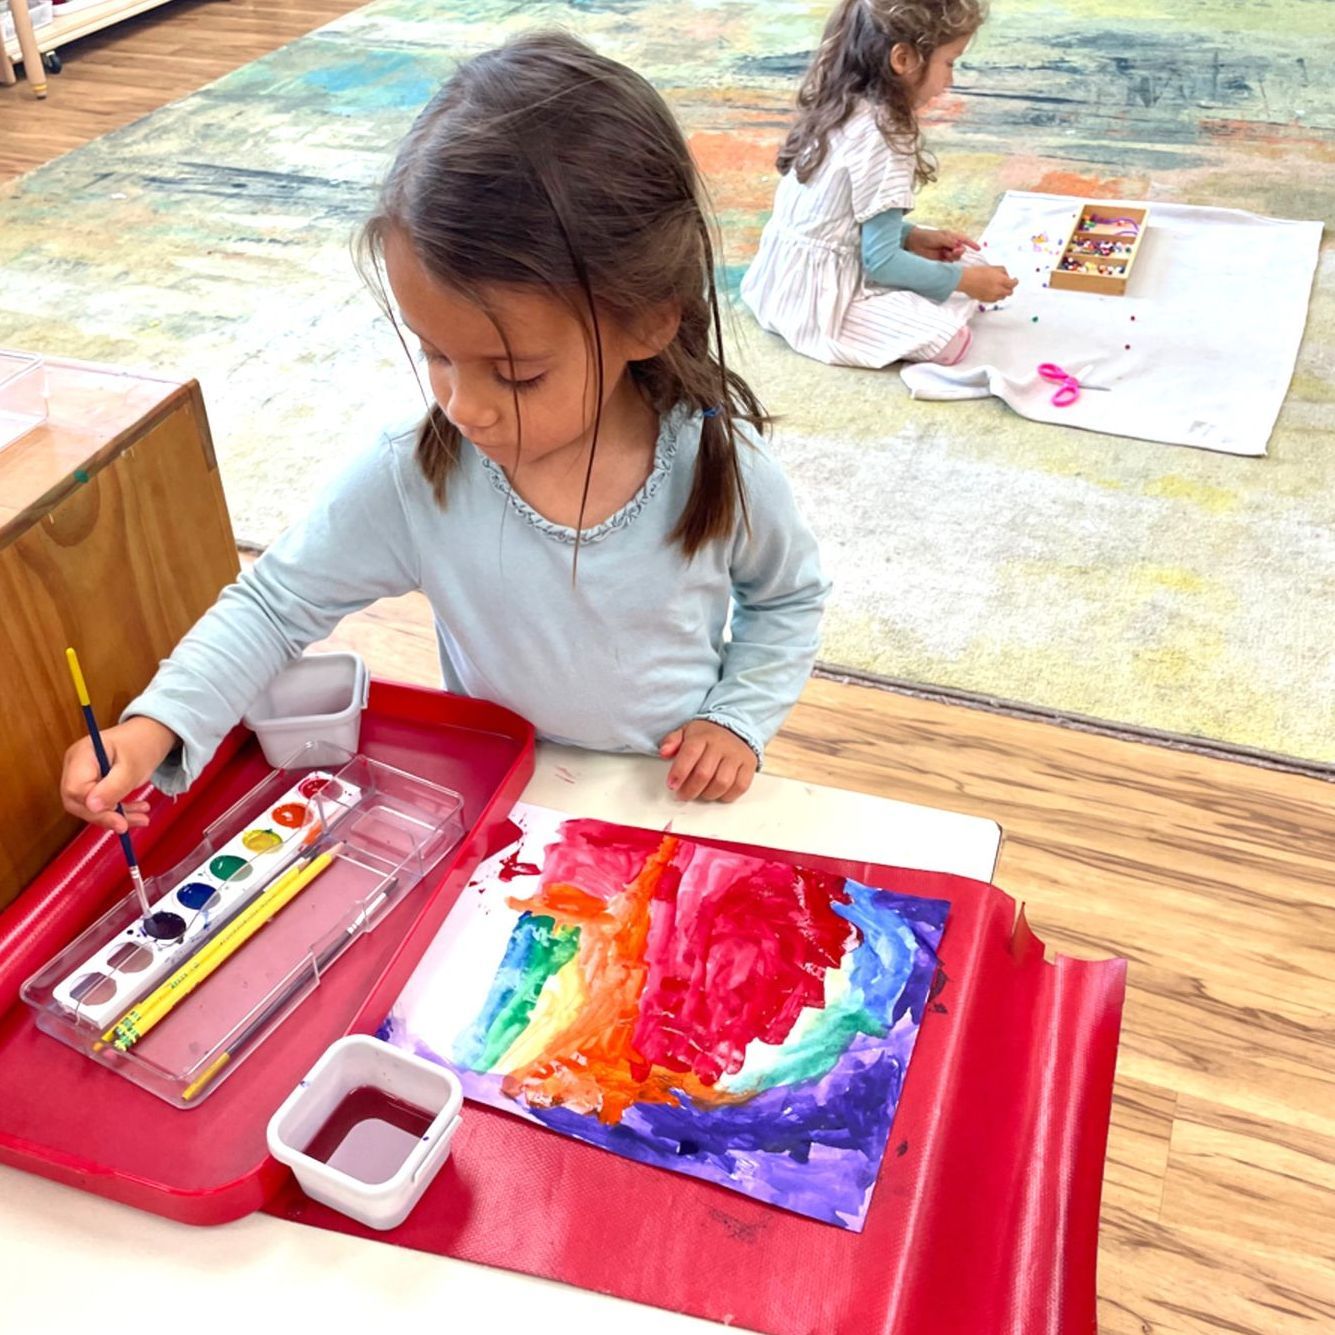 Montessori child painting